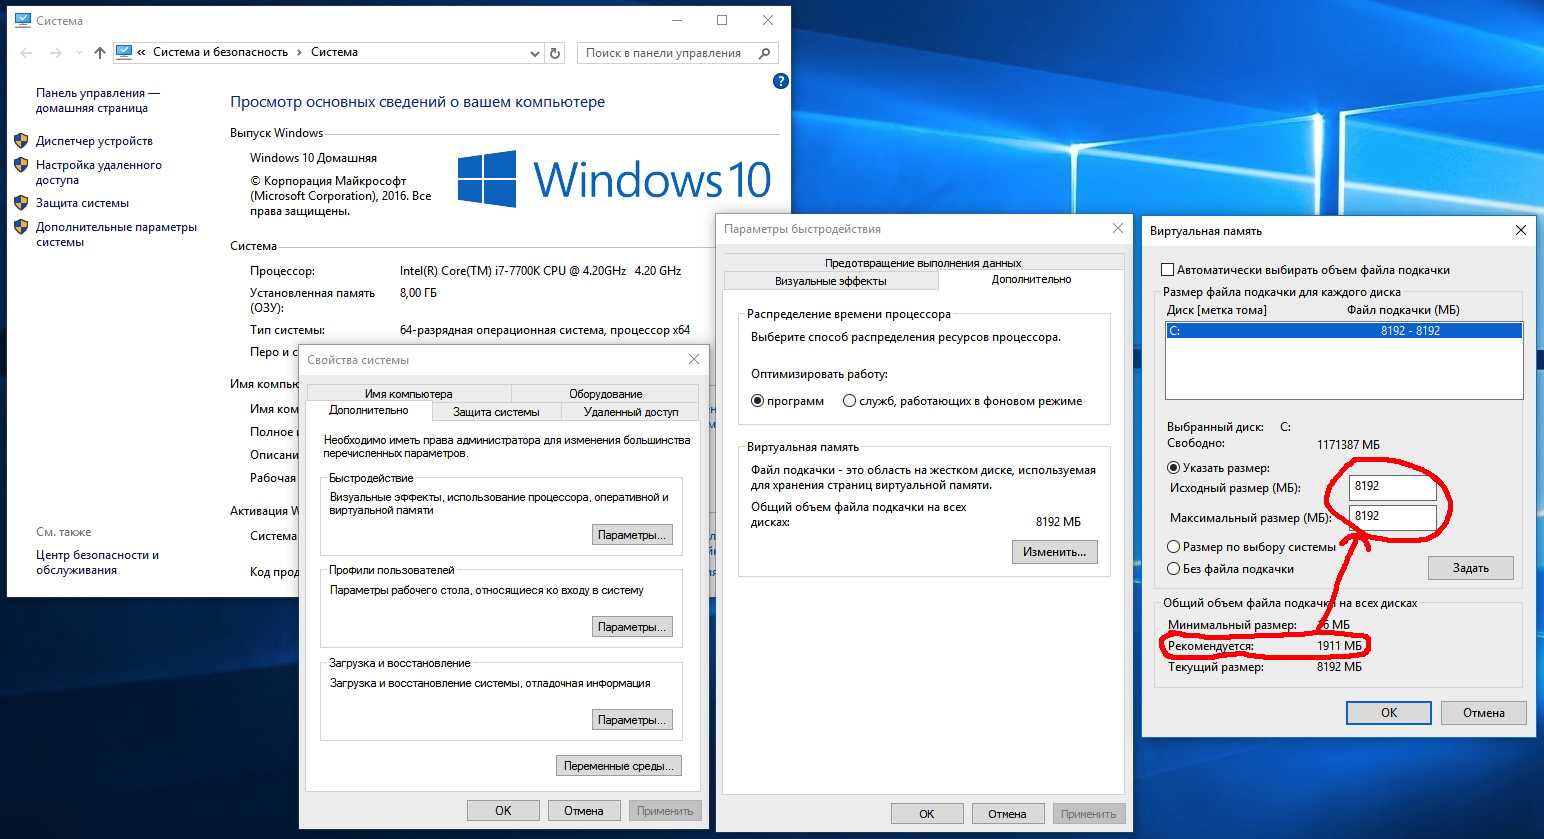 Оптимизация windows 10: как ускорить работу компьютера, если он тормозит